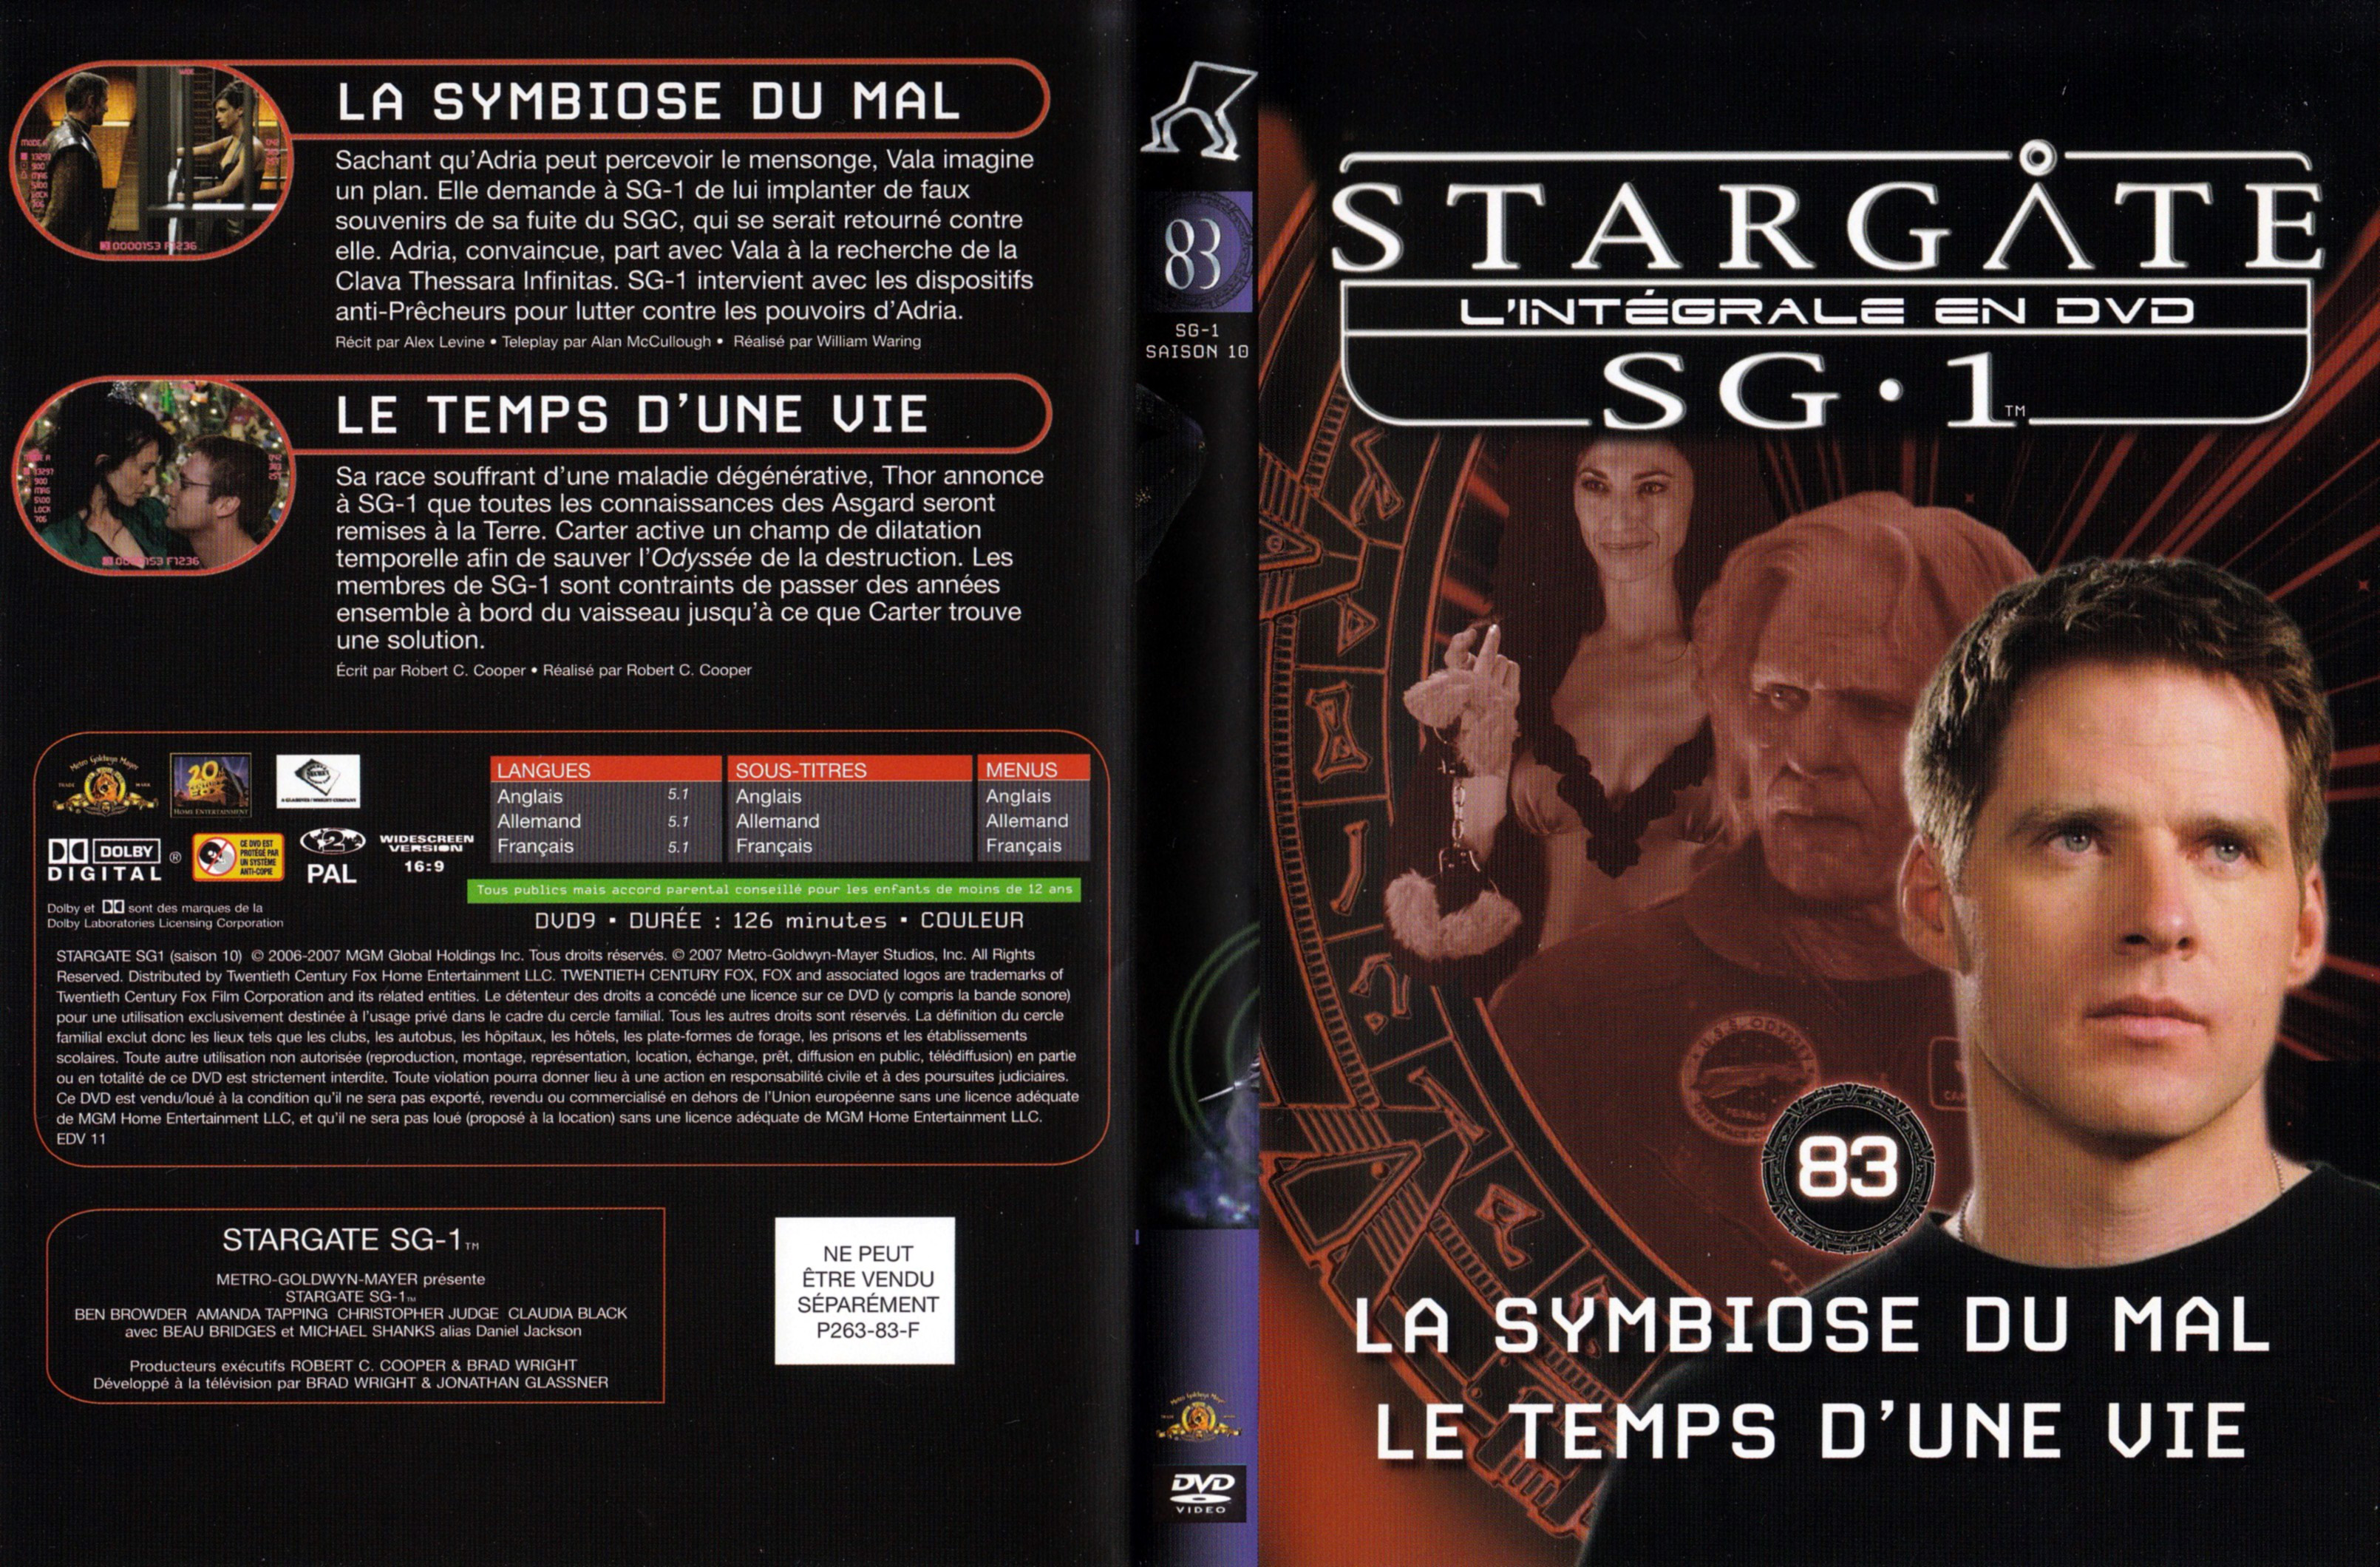 Jaquette DVD Stargate SG1 Intgrale Saison 10 vol 83